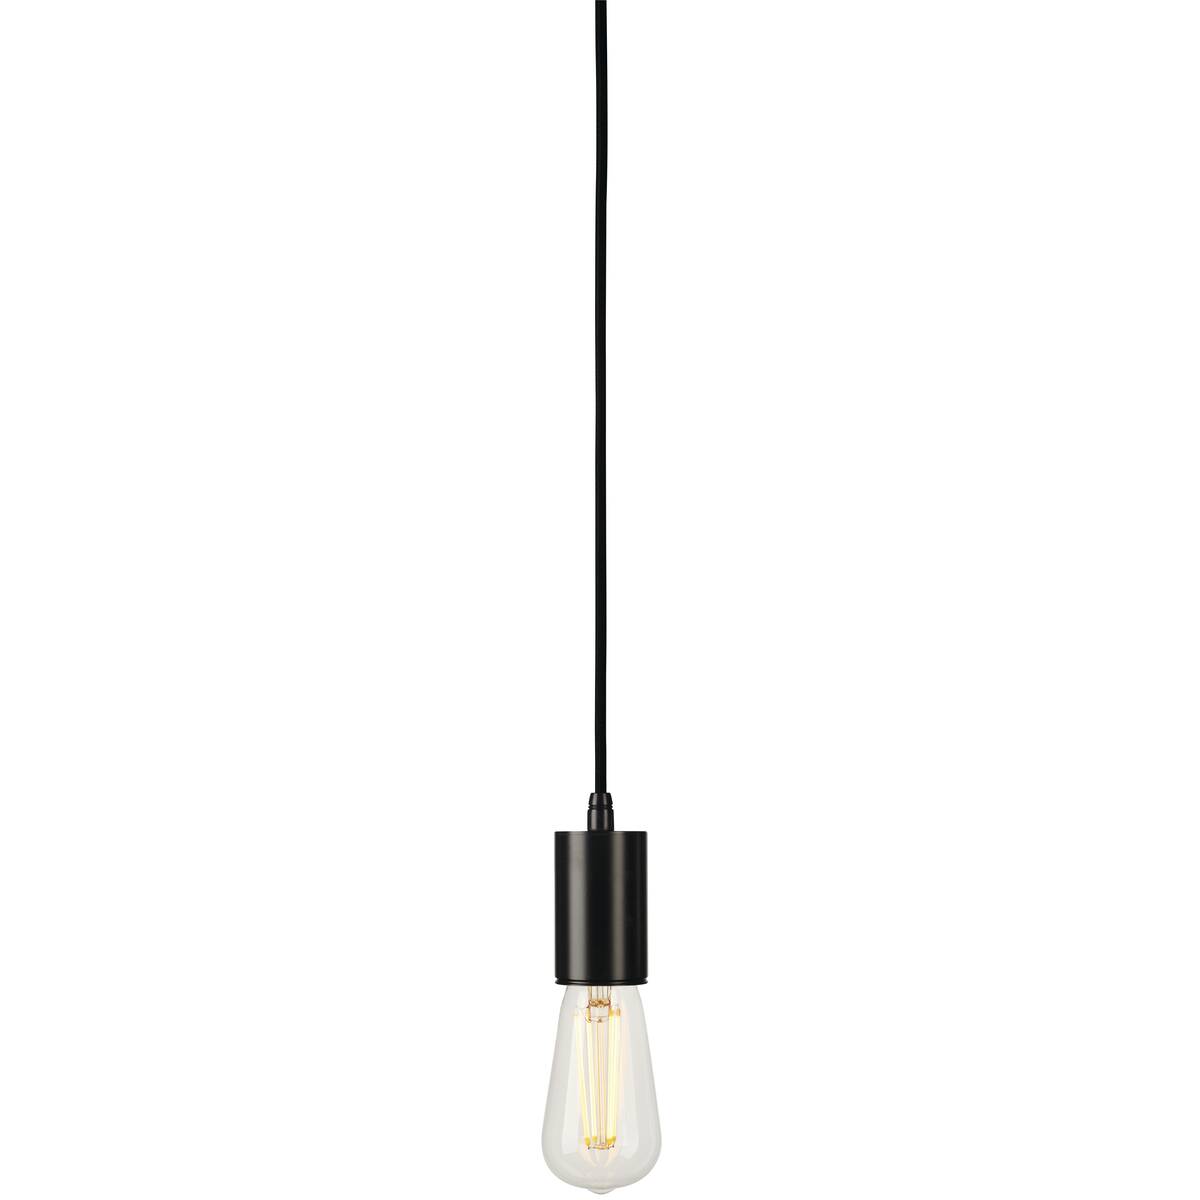 SLV No. 132680 FITU Deckenhaken für Pendelleuchte Kabelklemme schwarz -->  Leuchten & Lampen online kaufen im Shop lightk